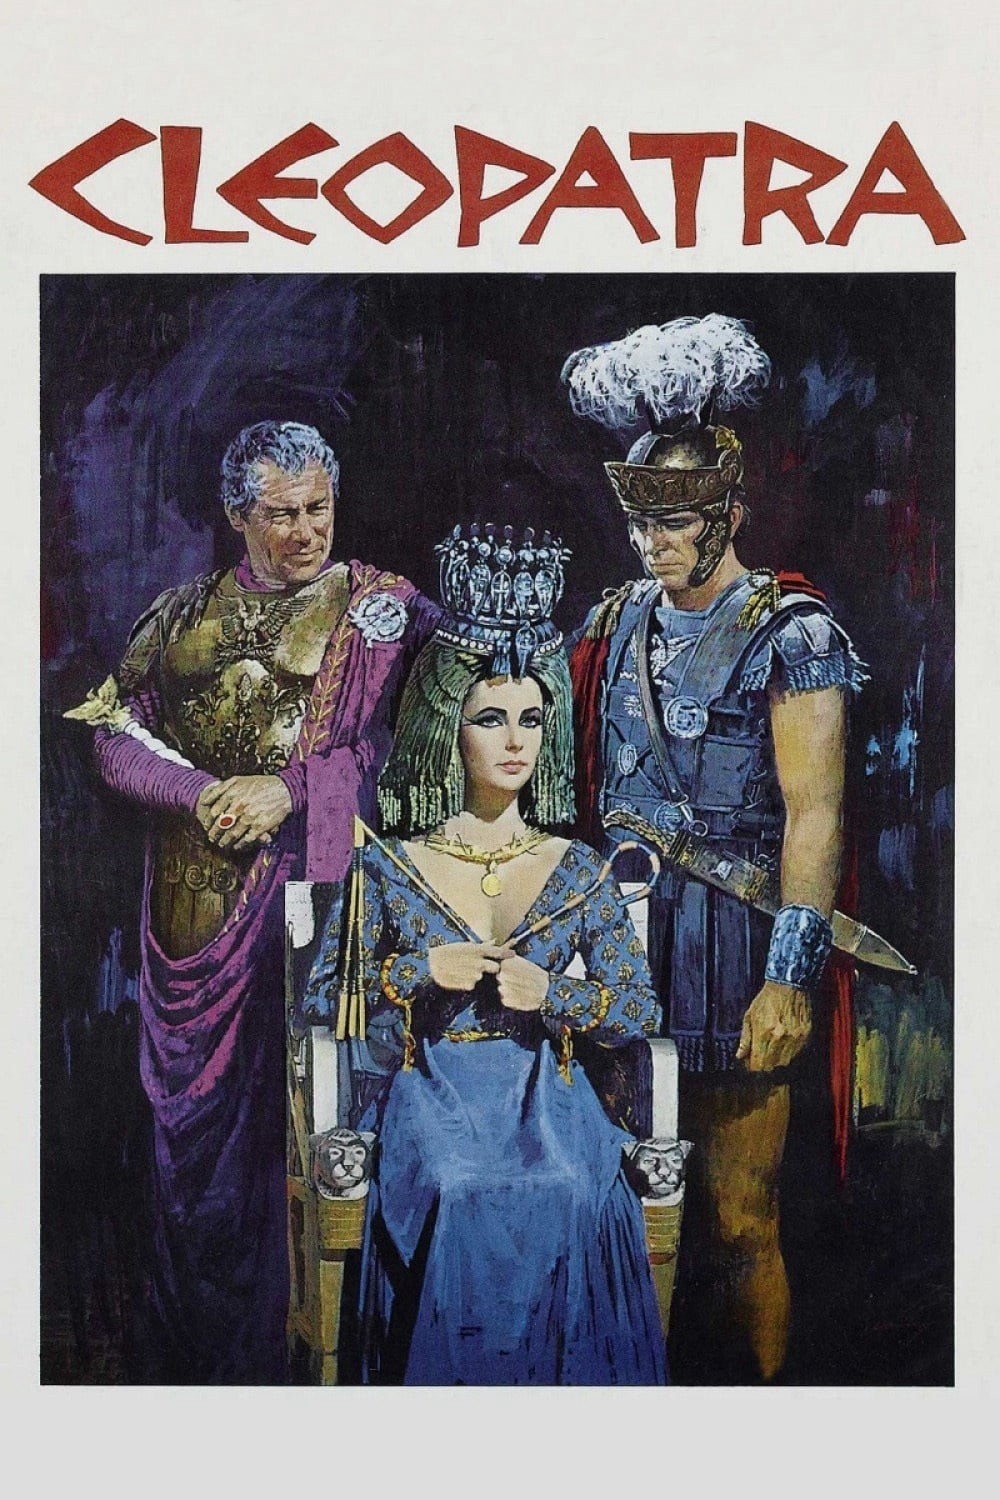 Nữ hoàng Cleopatra - Nữ hoàng Cleopatra (1963)